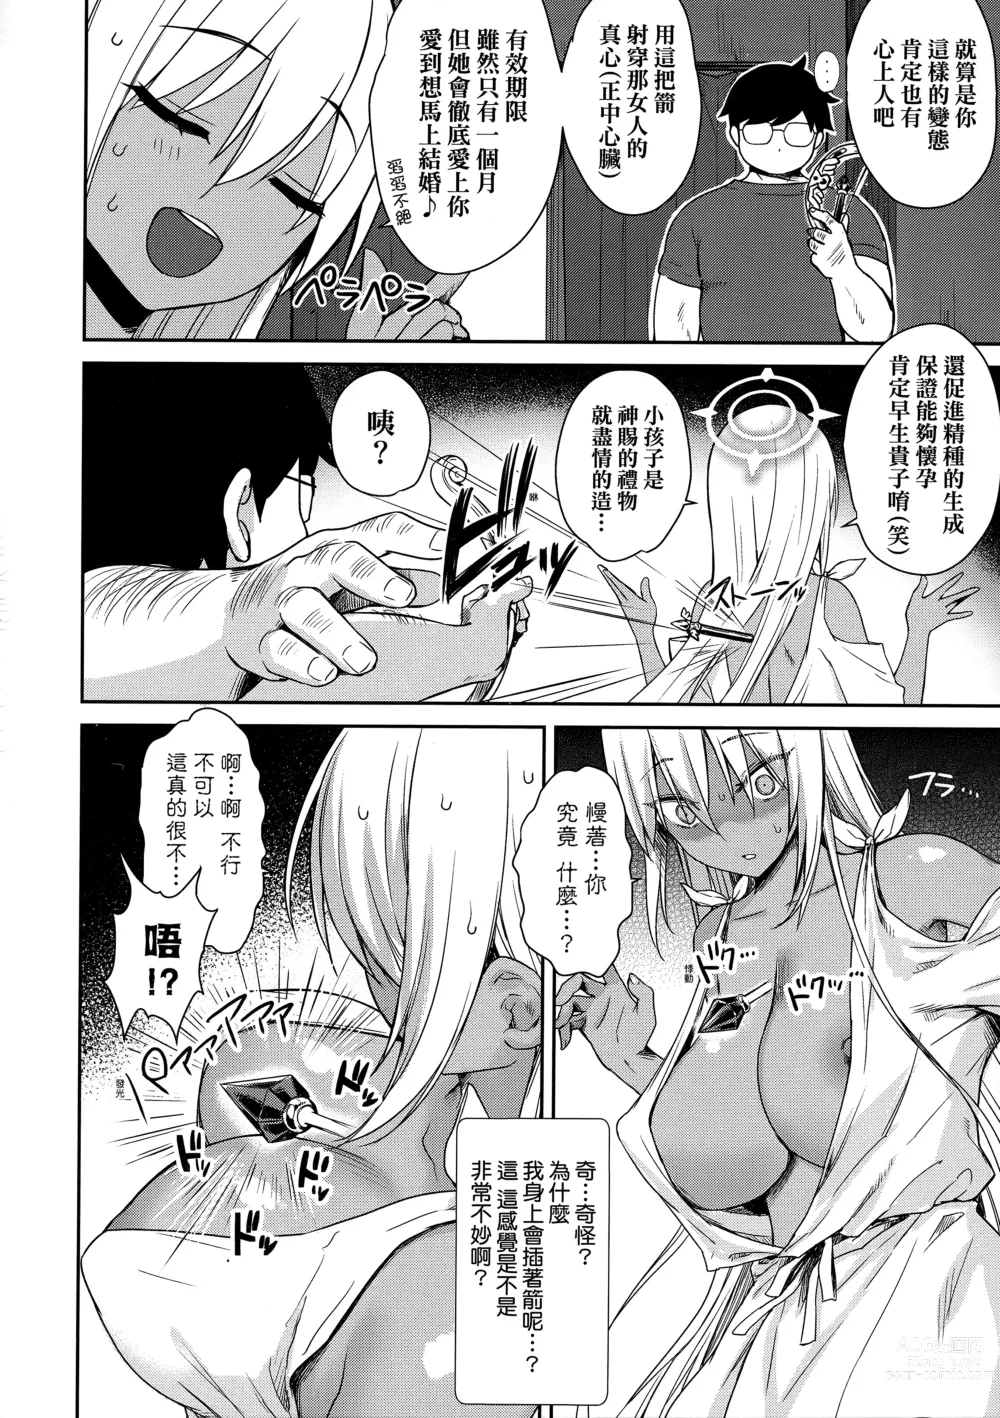 Page 183 of manga 鄰居家的傲嬌淫魔美眉 (decensored)